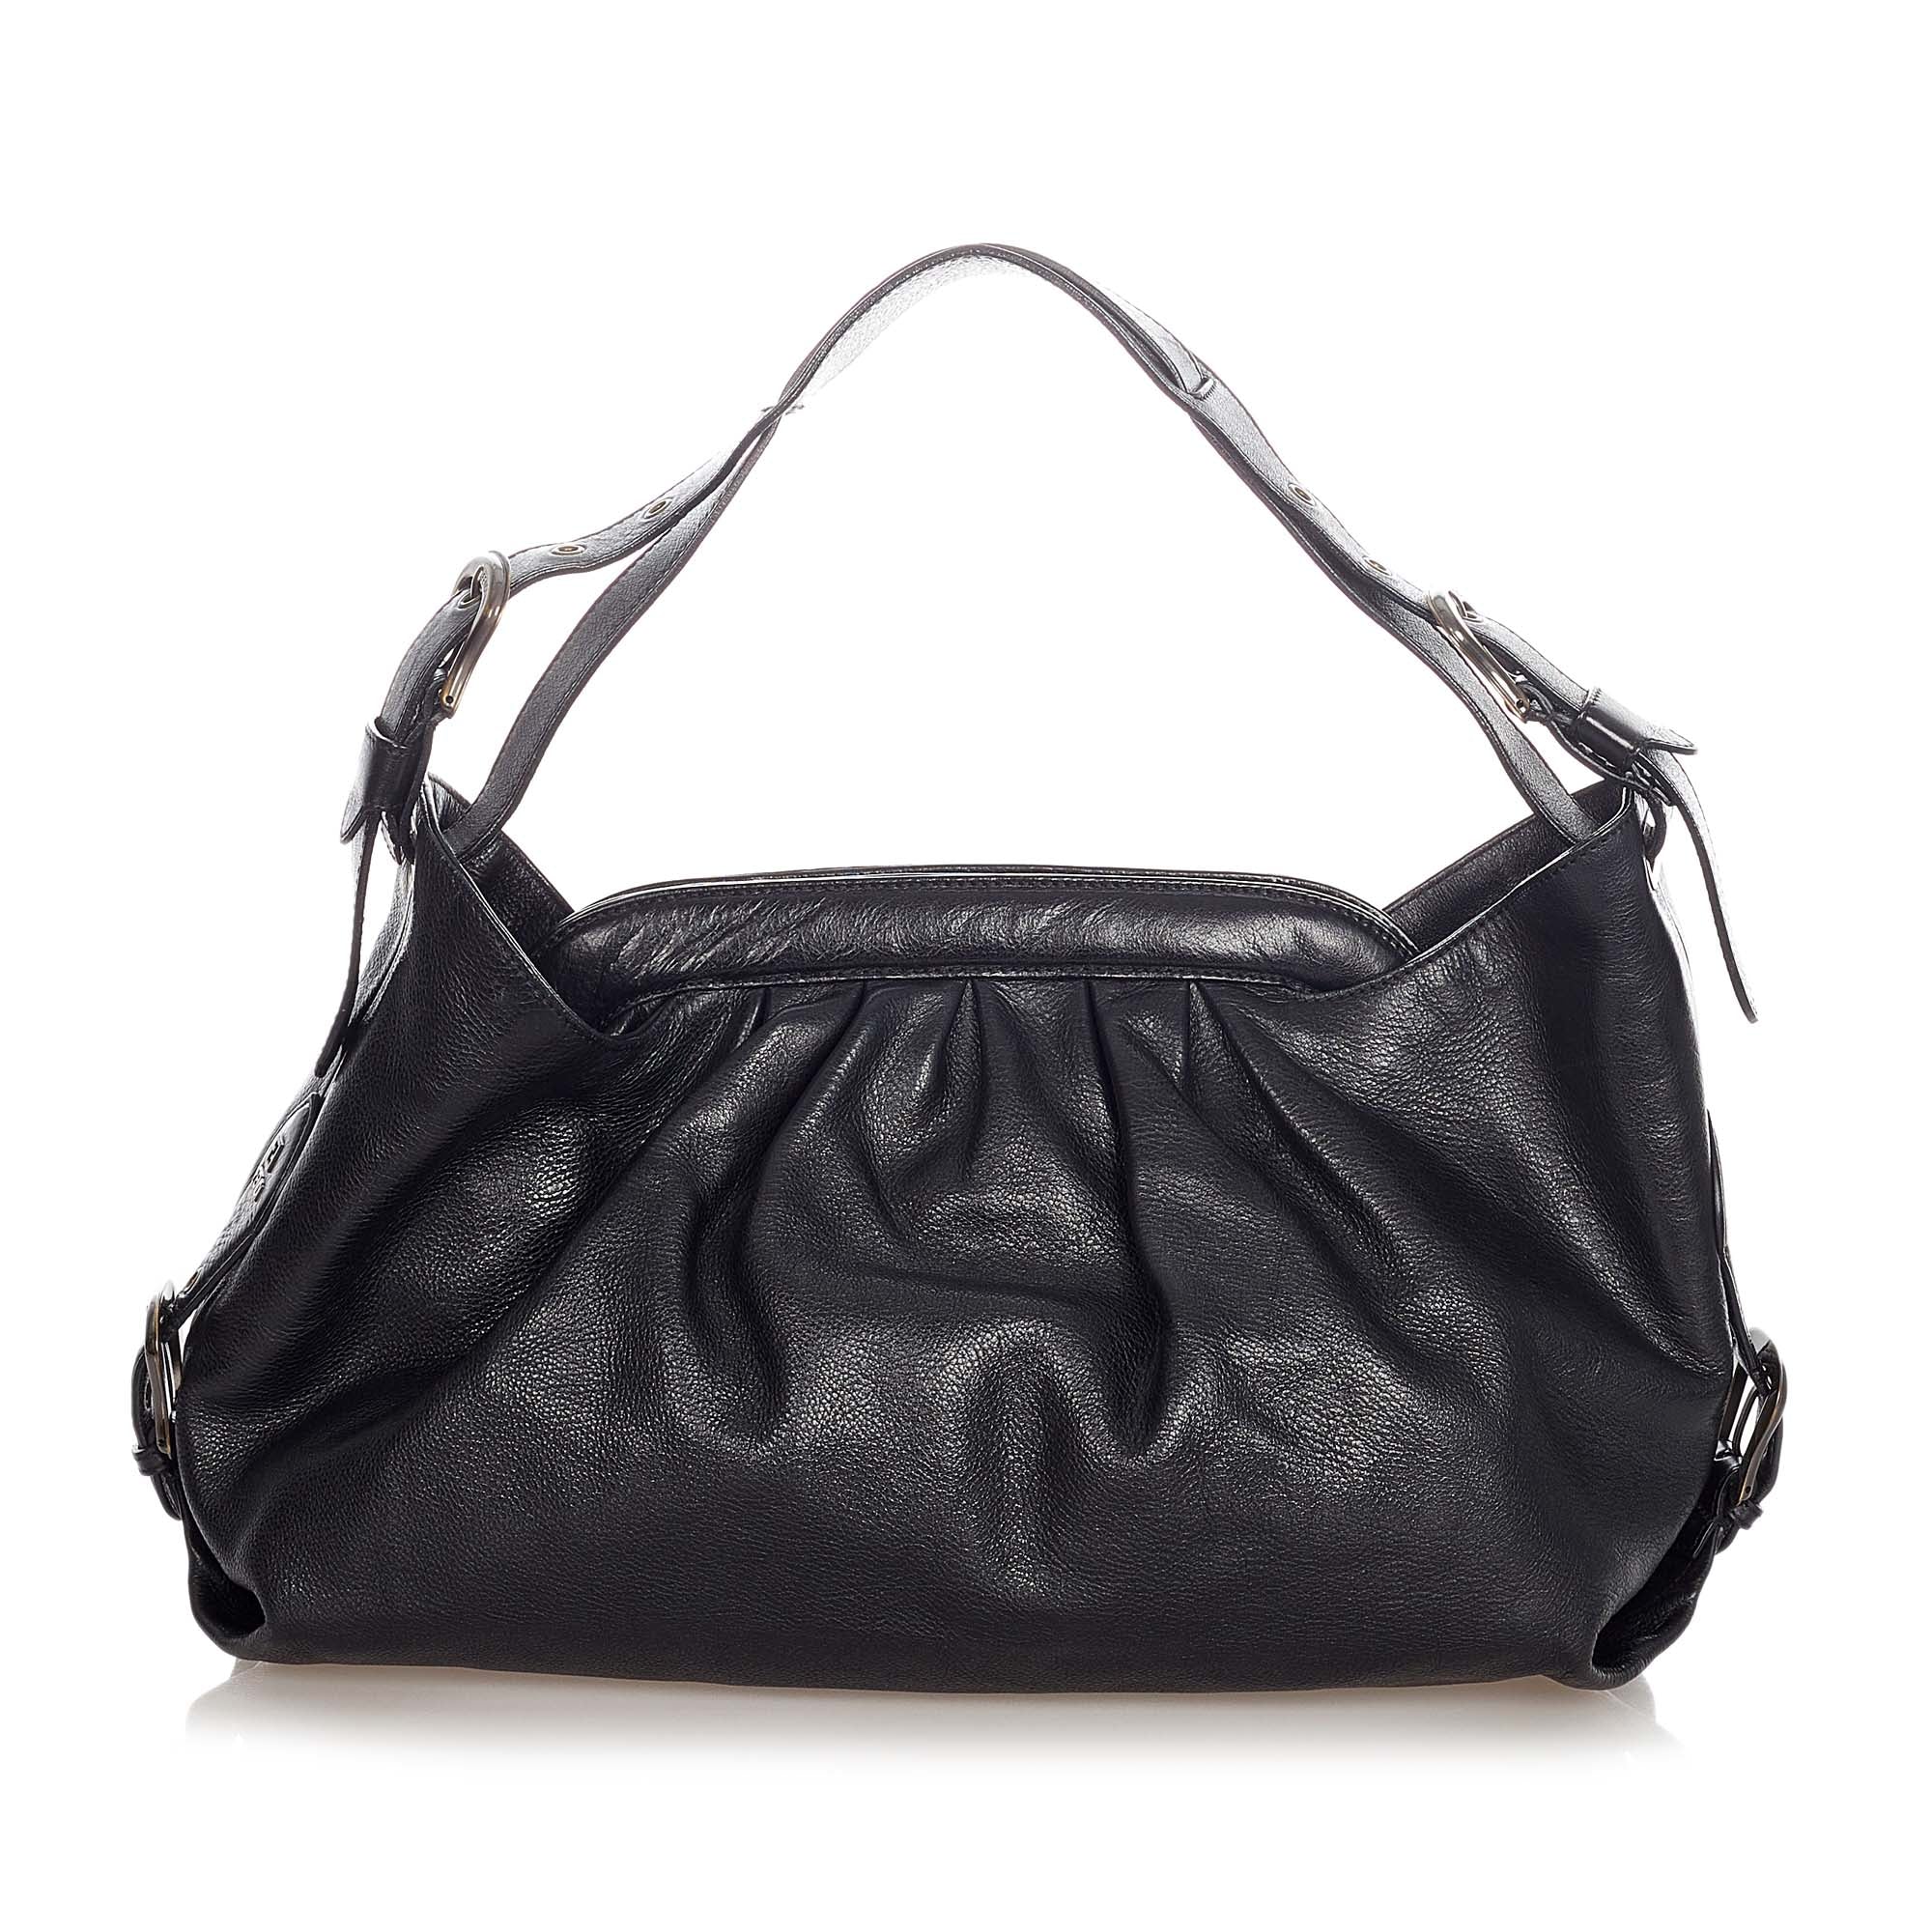 Leather Doctor Bag for Women Black Leather Shoulder Bag 